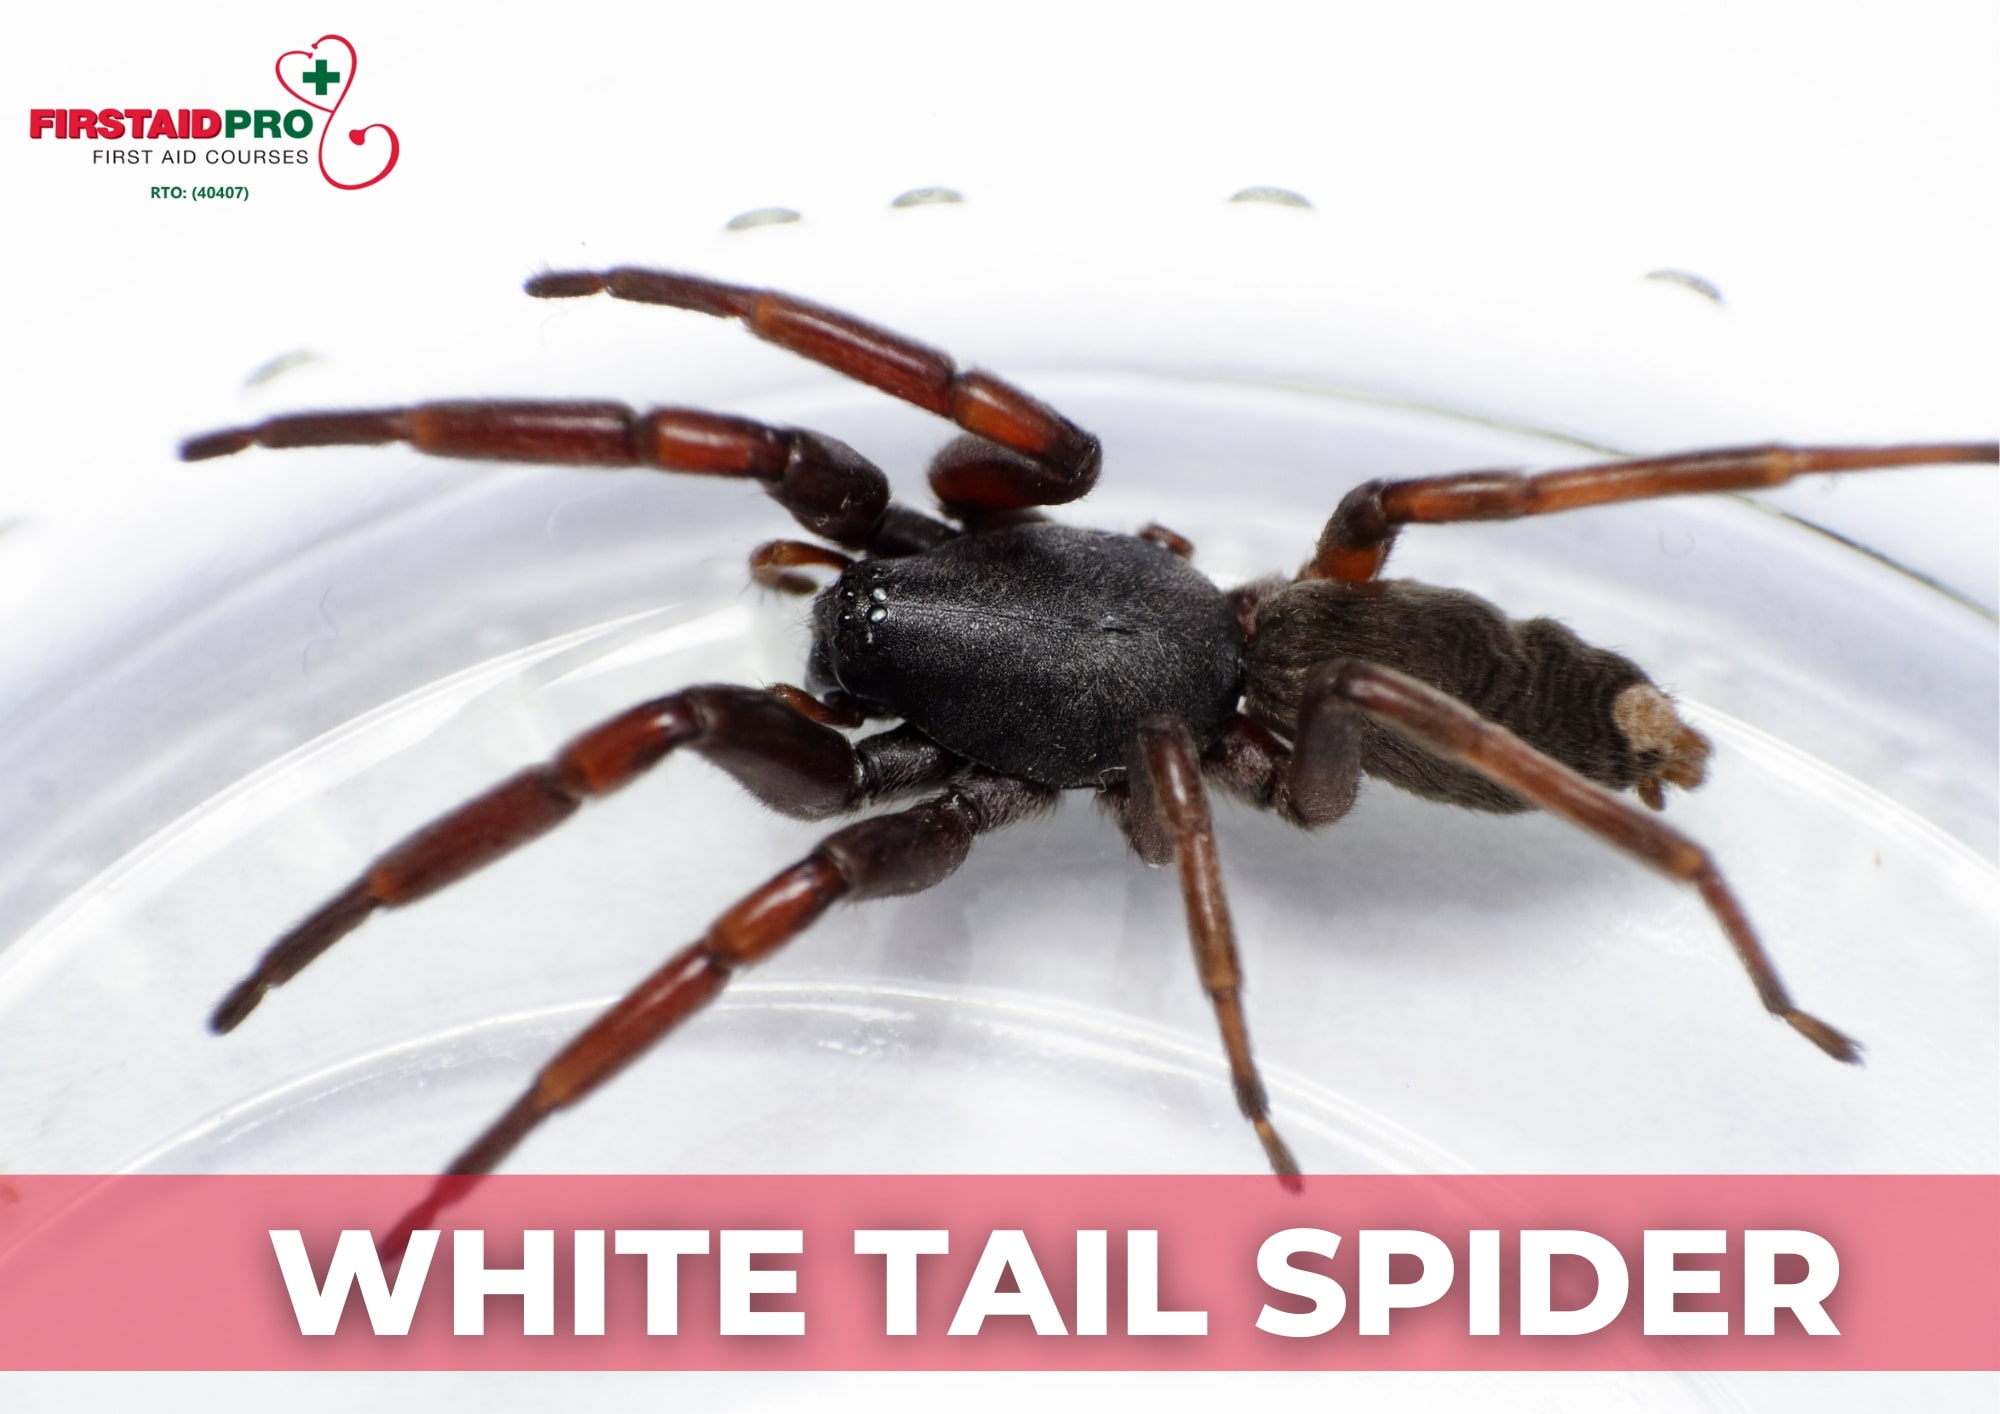 White tail spider